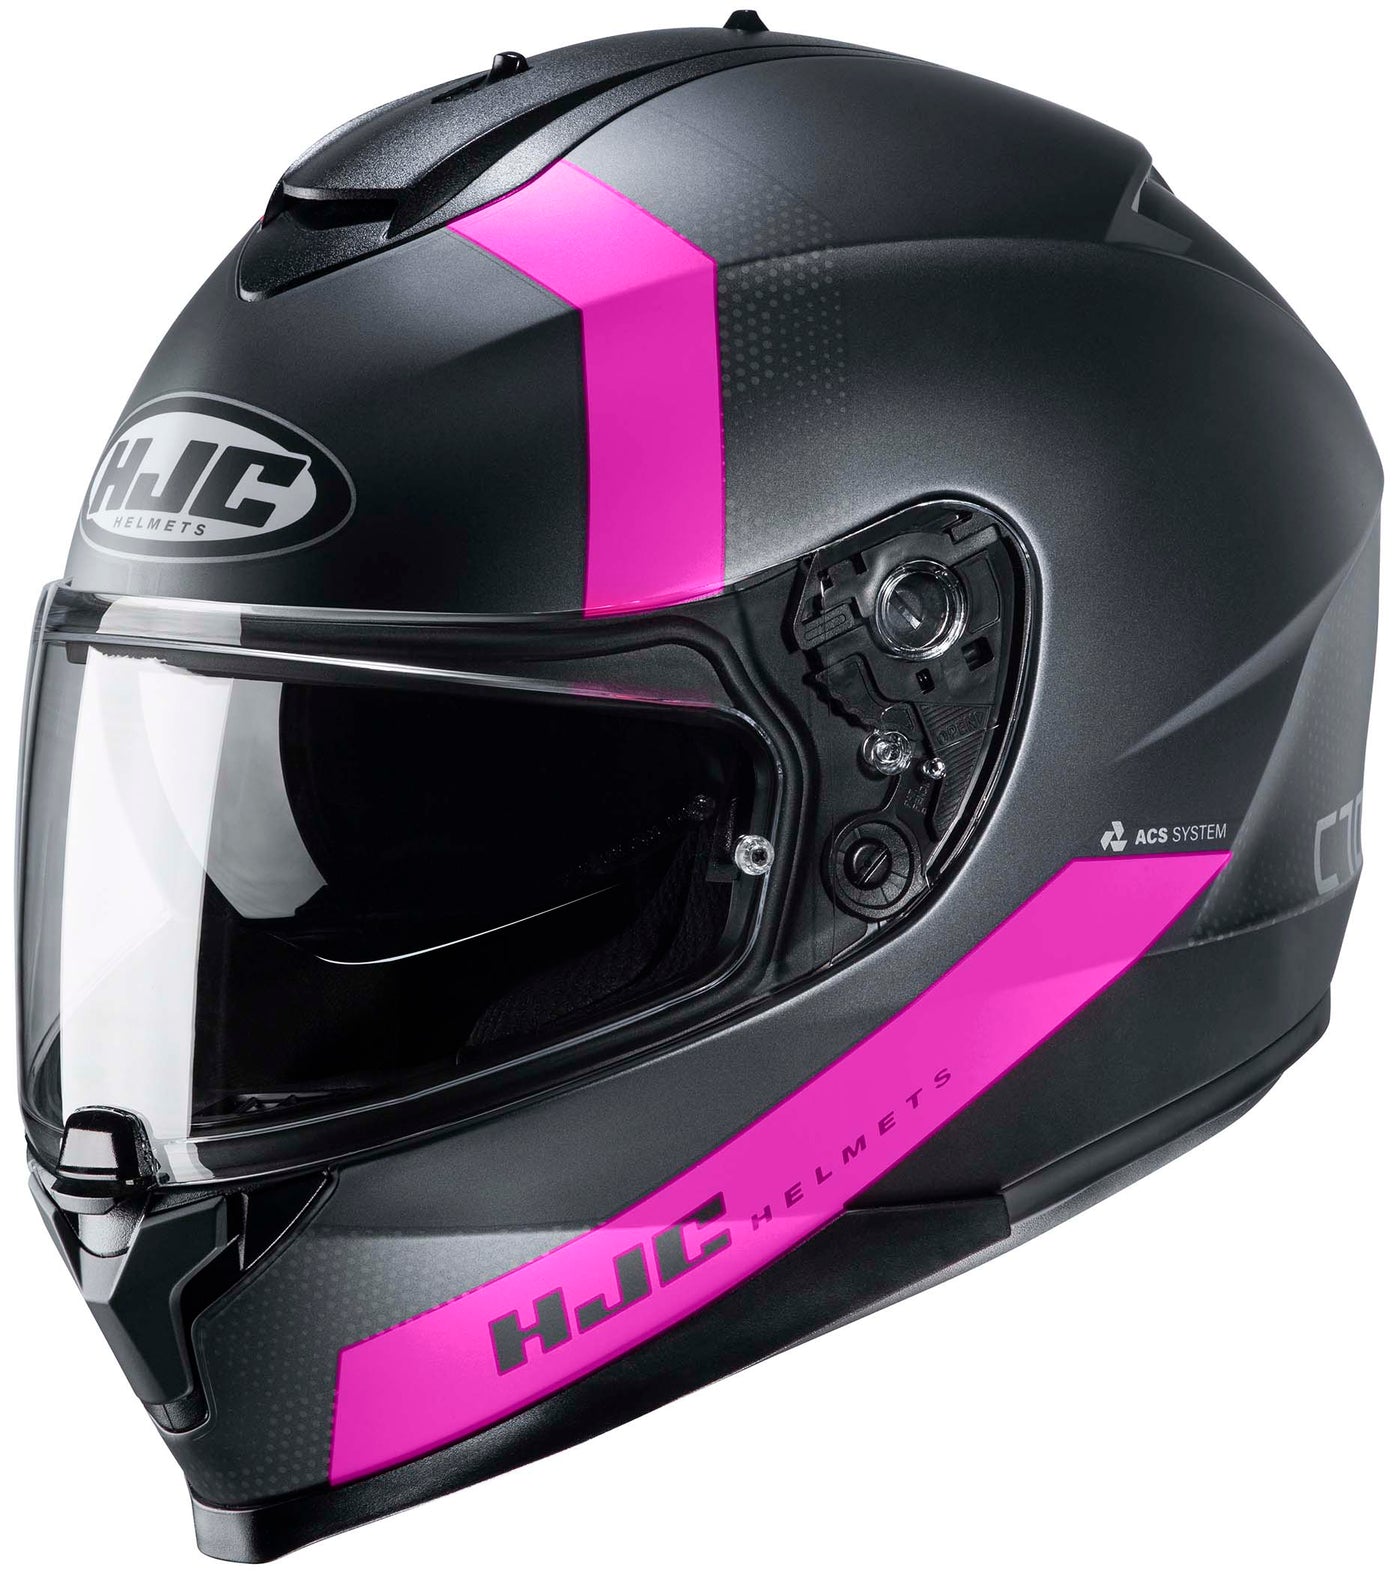 HJC C70 Eura Full Face Motorcycle Helmet